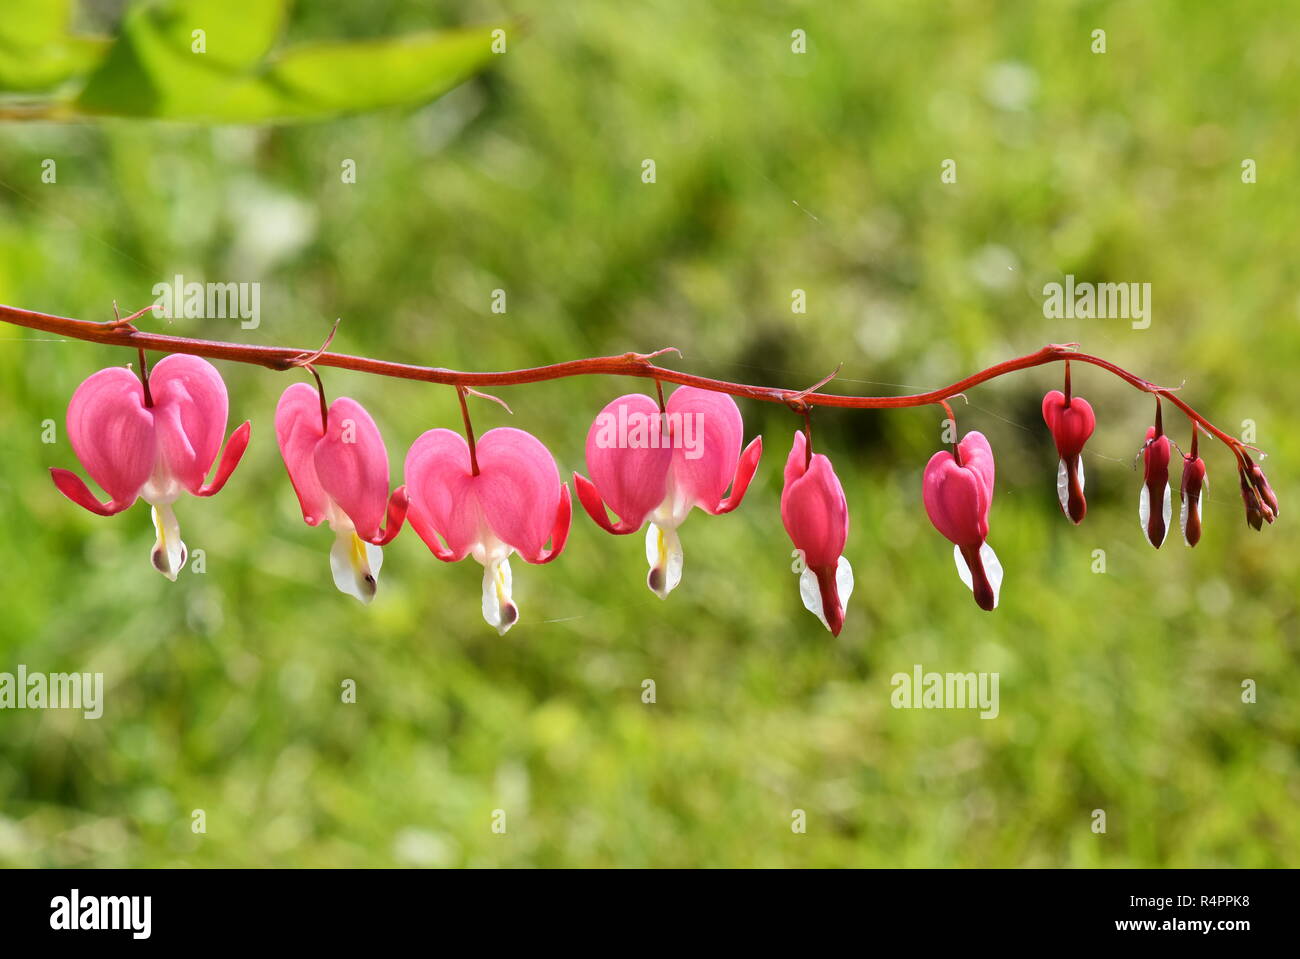 Die herzförmigen Blüten der blutende Herz pflanze Campanula pyramidalis Californica in einem Garten Stockfoto